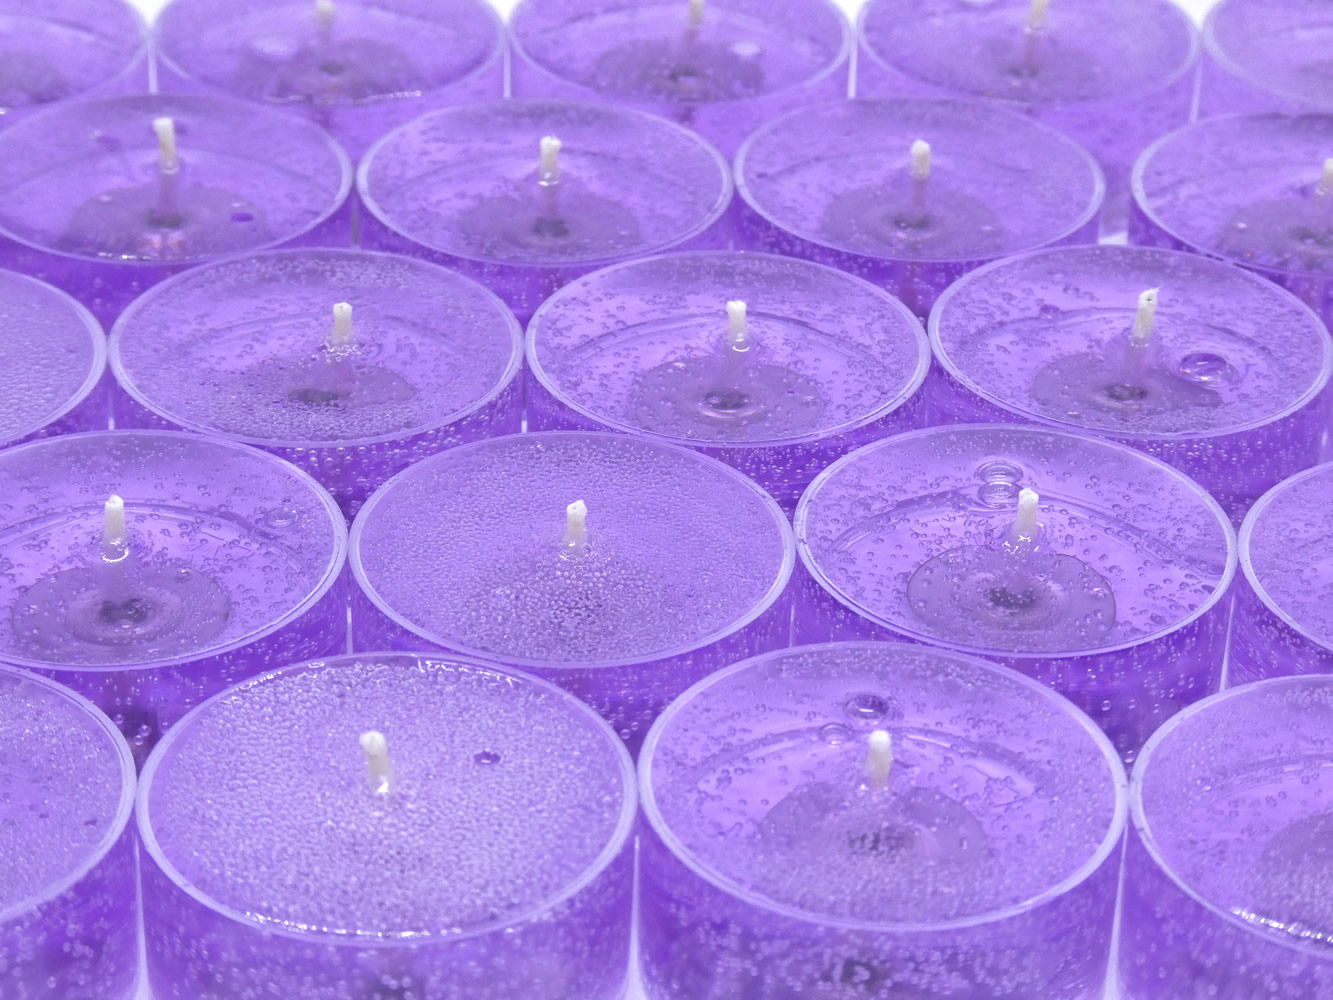 Lavender Scented Gel Candle Tea Lights - 4 pk.